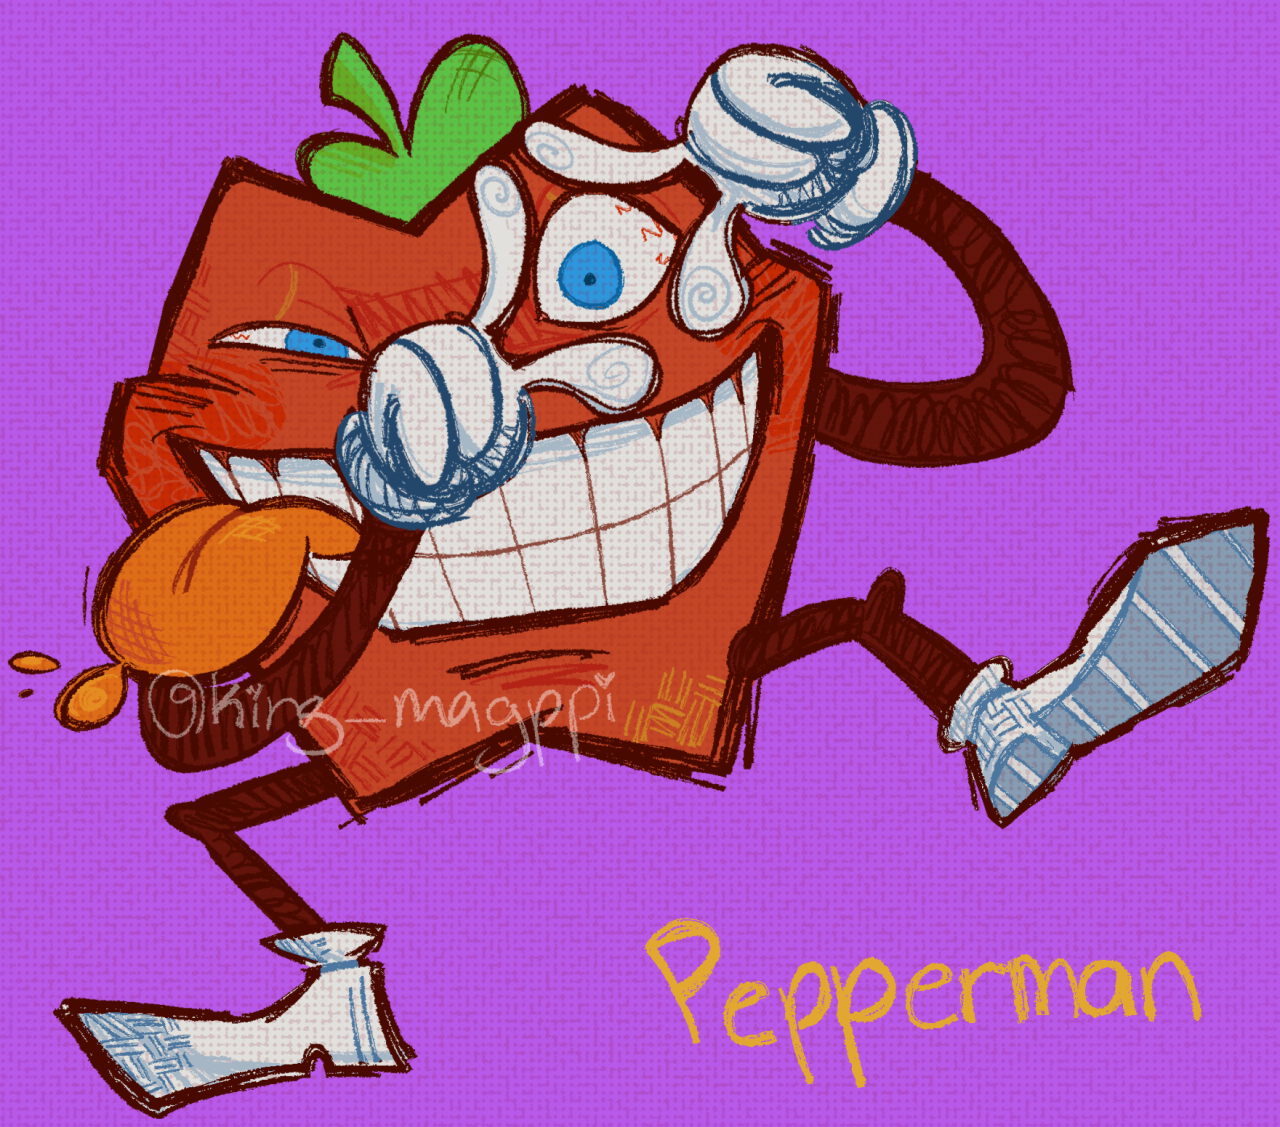 pepper man pizza tower theme kazoo｜TikTok Search